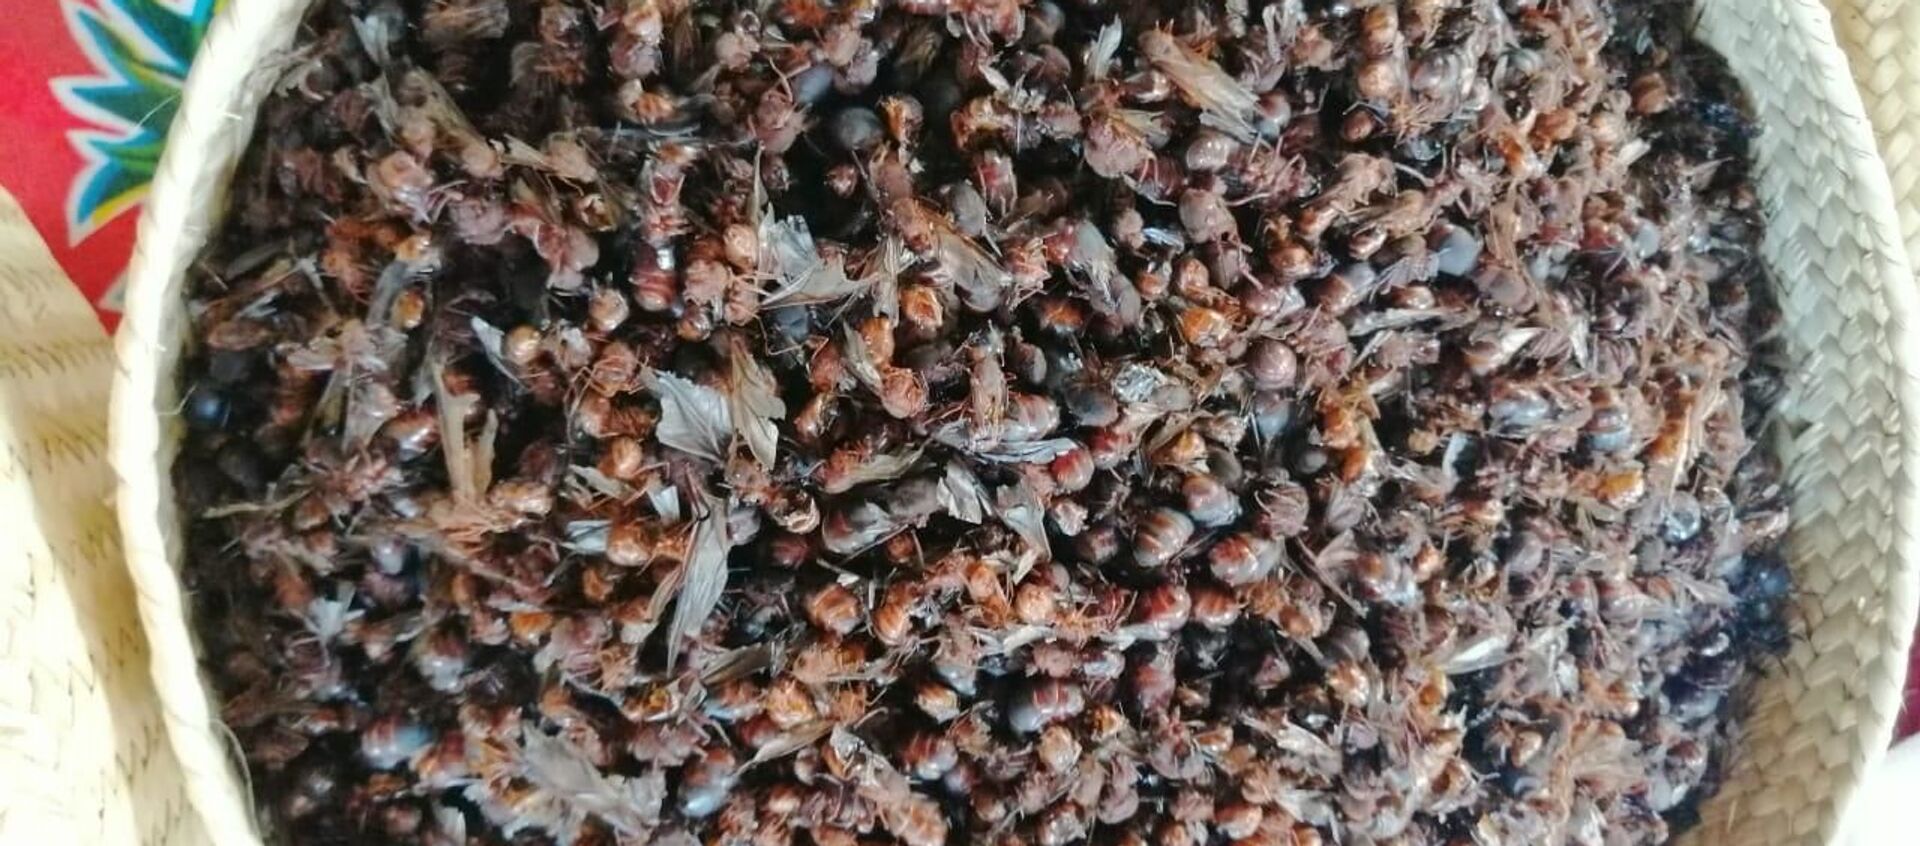 Las hormigas voladoras son un manjar de la cocina mesoamericana - Sputnik Mundo, 1920, 19.06.2019